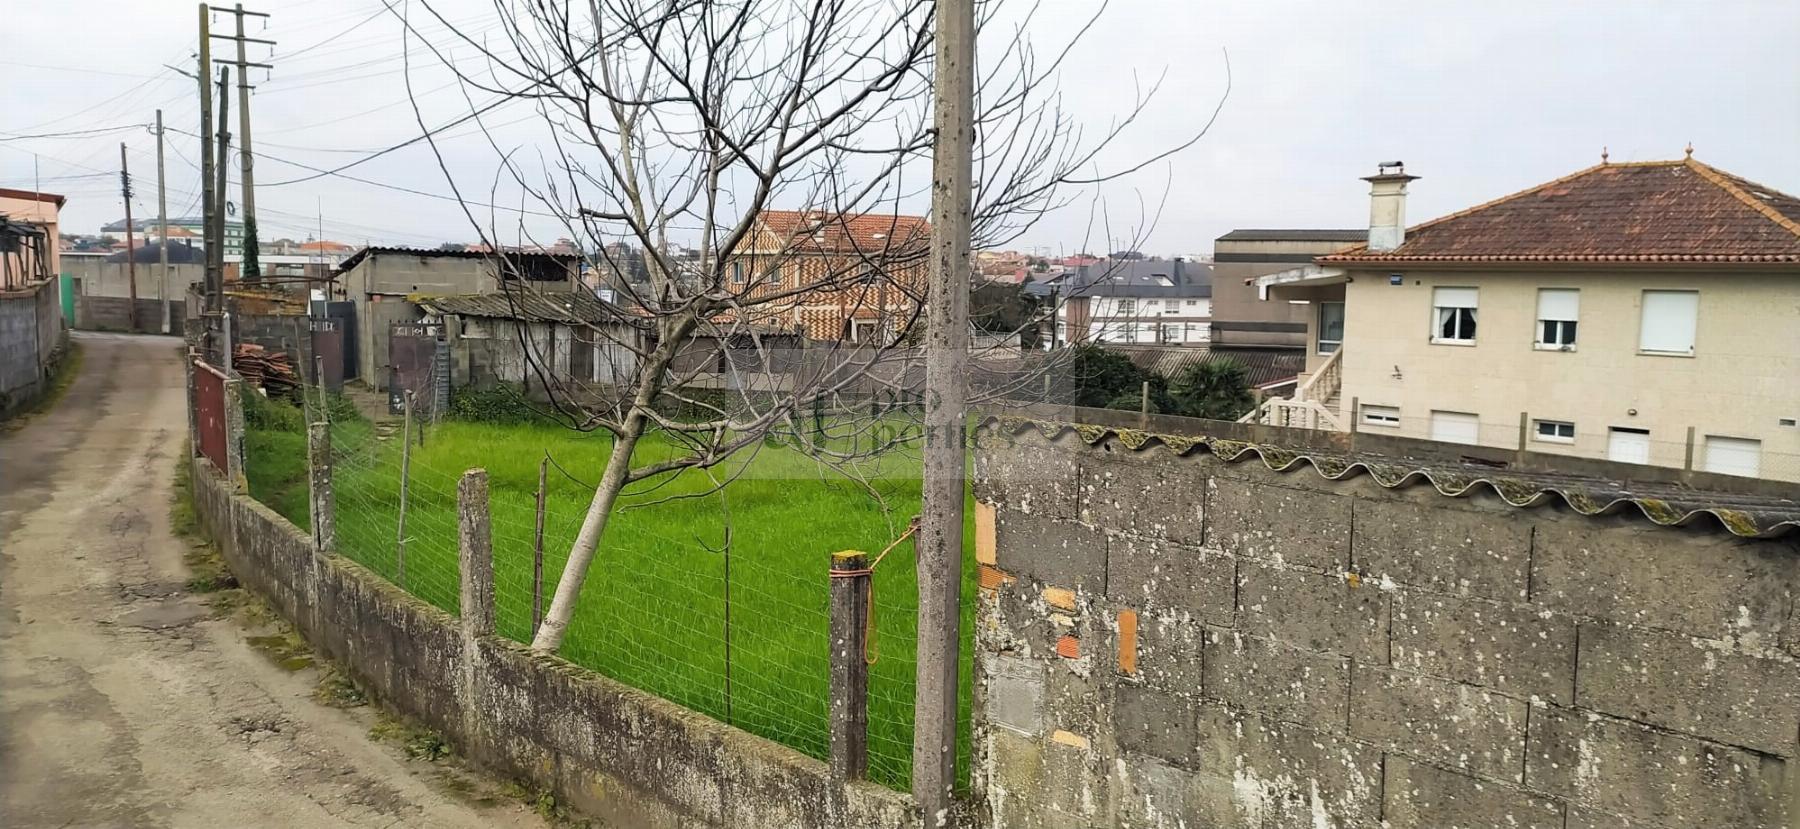 Vendita di terreno in Vigo